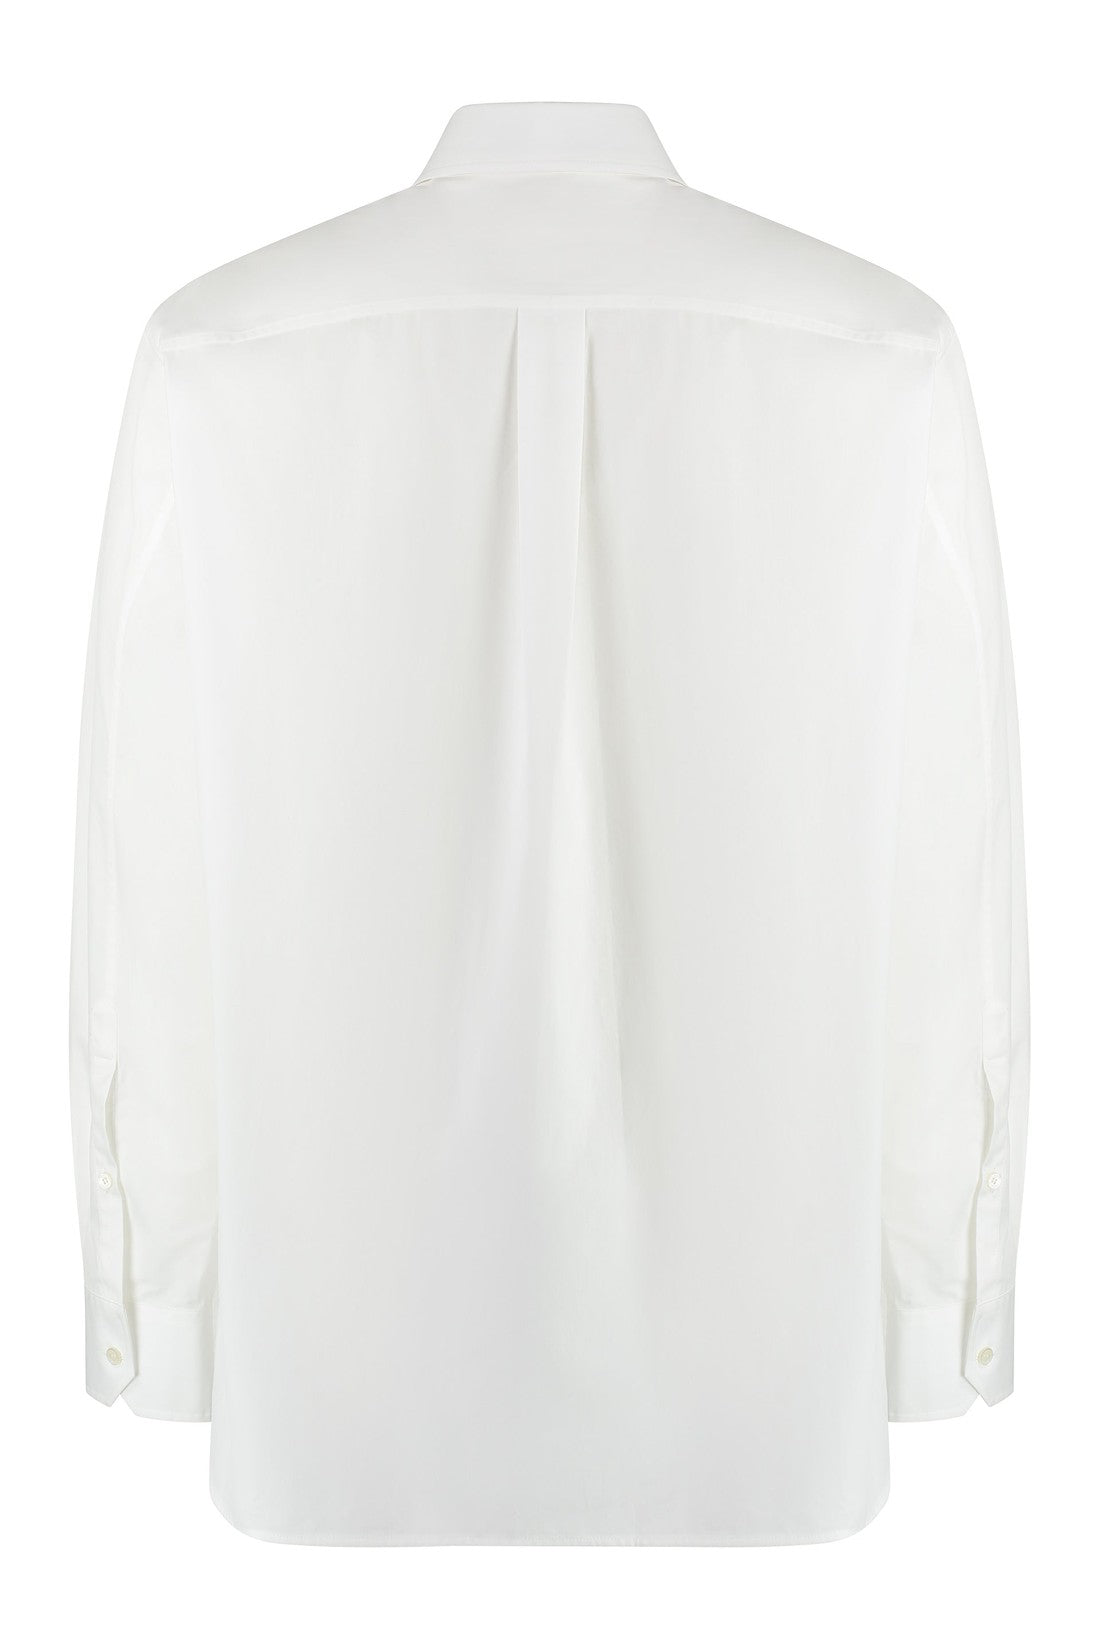 Valentino-OUTLET-SALE-Cotton shirt-ARCHIVIST